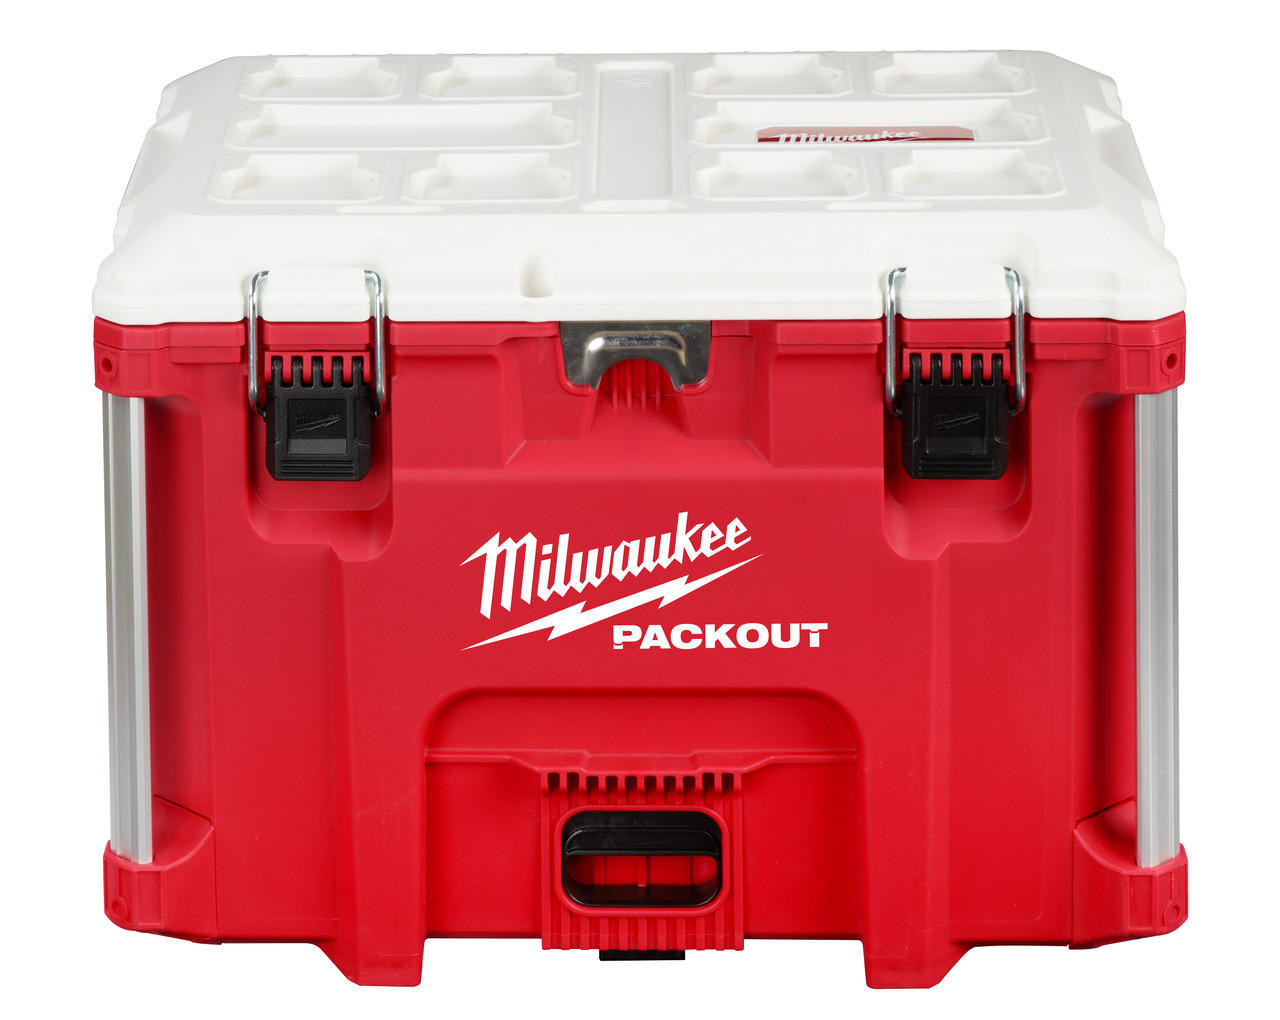  Milwaukee PACKOUT 40QT XL Cooler 48-22-8462 